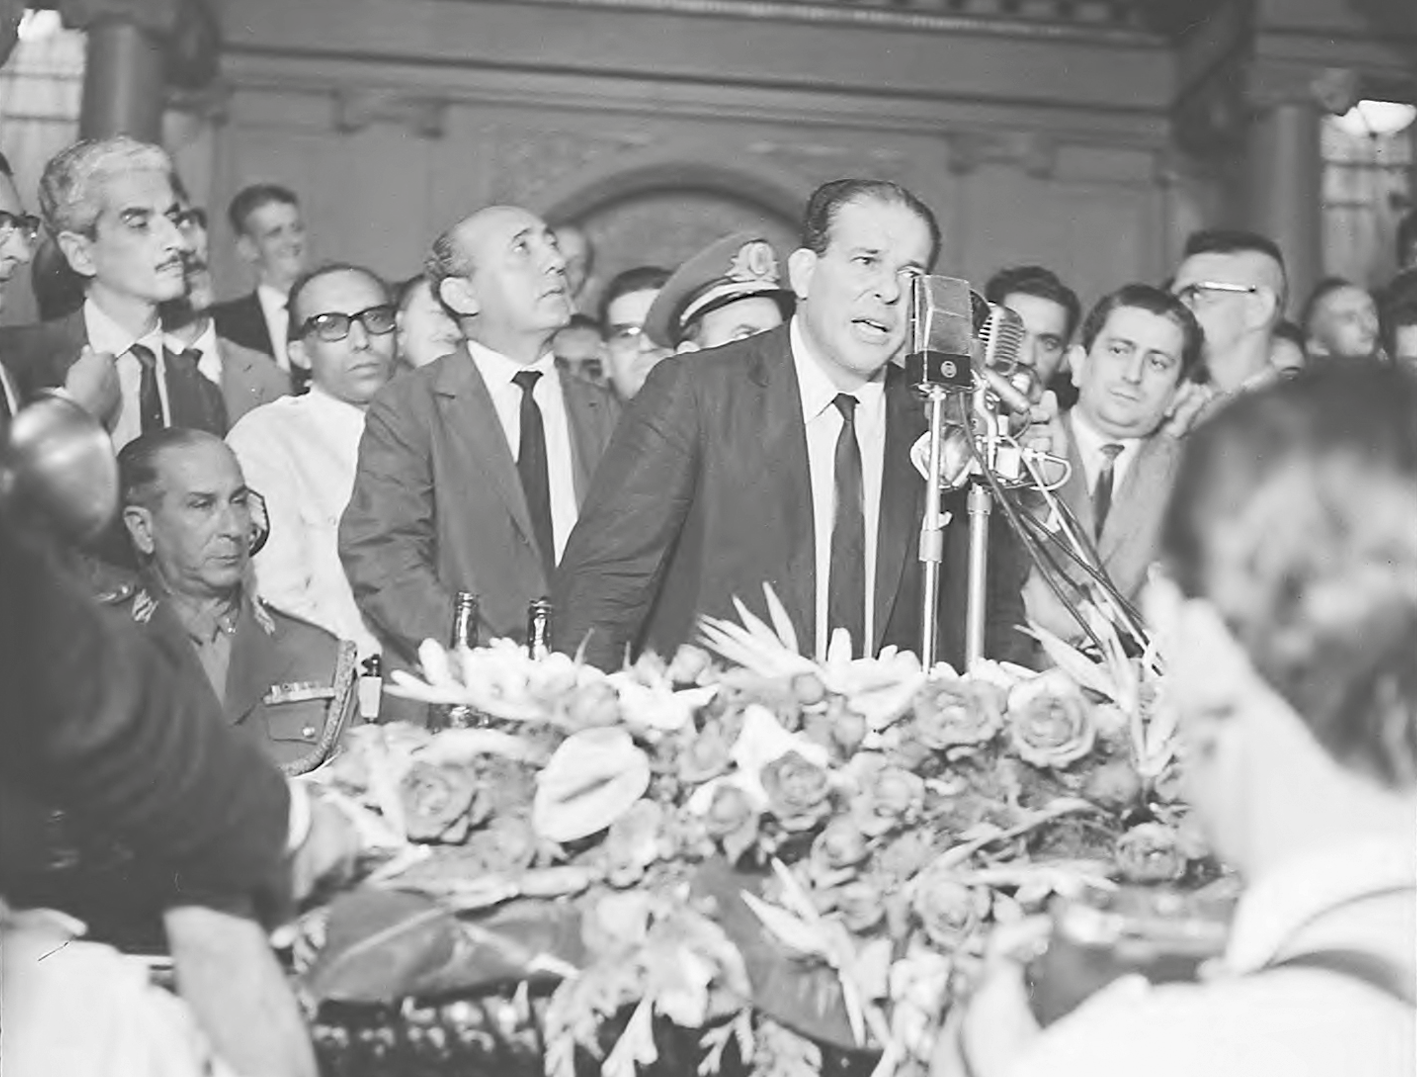 Fotografia em preto e branco. João Goulart, de terno e gravata, cabelos penteados para trás. Está em pé, falando em um microfone. Ao seu redor, diversos homens acompanham o ato.